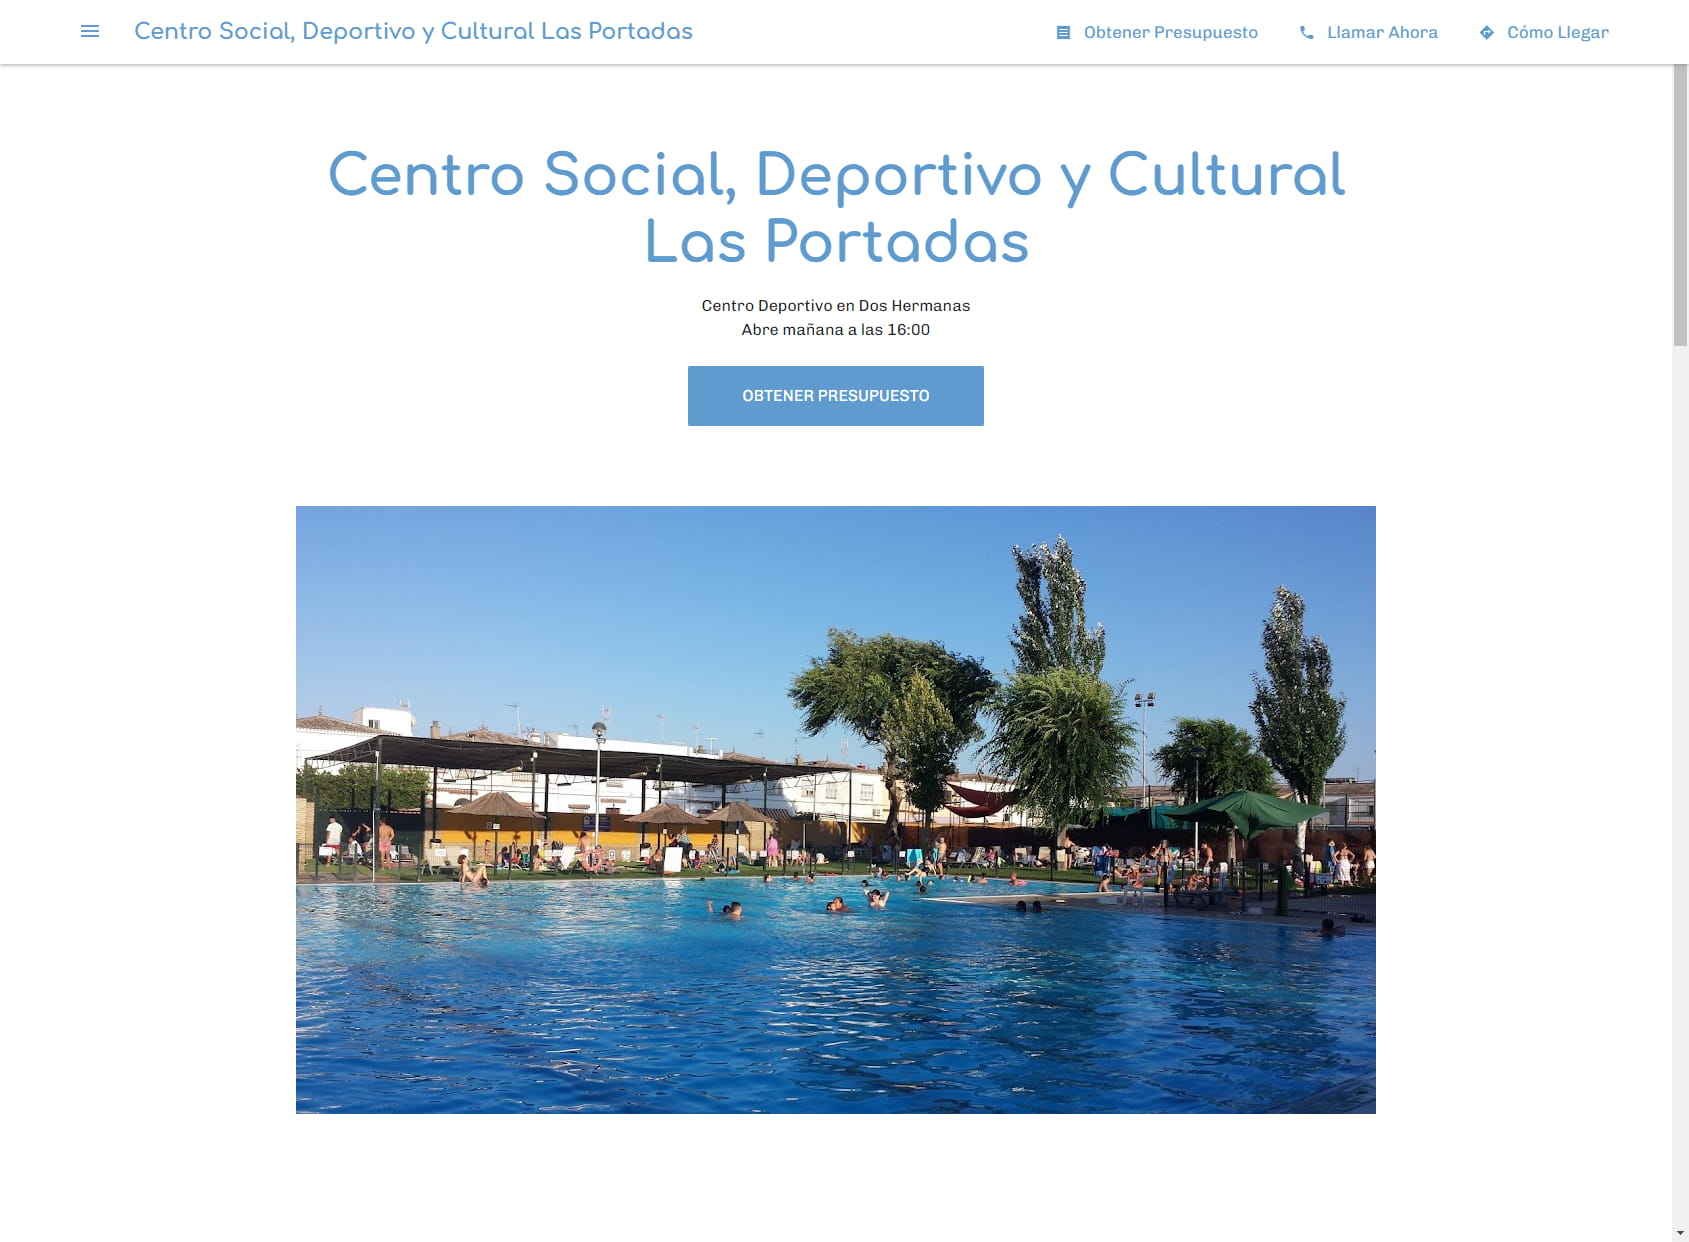 Centro Social, Deportivo y Cultural Las Portadas